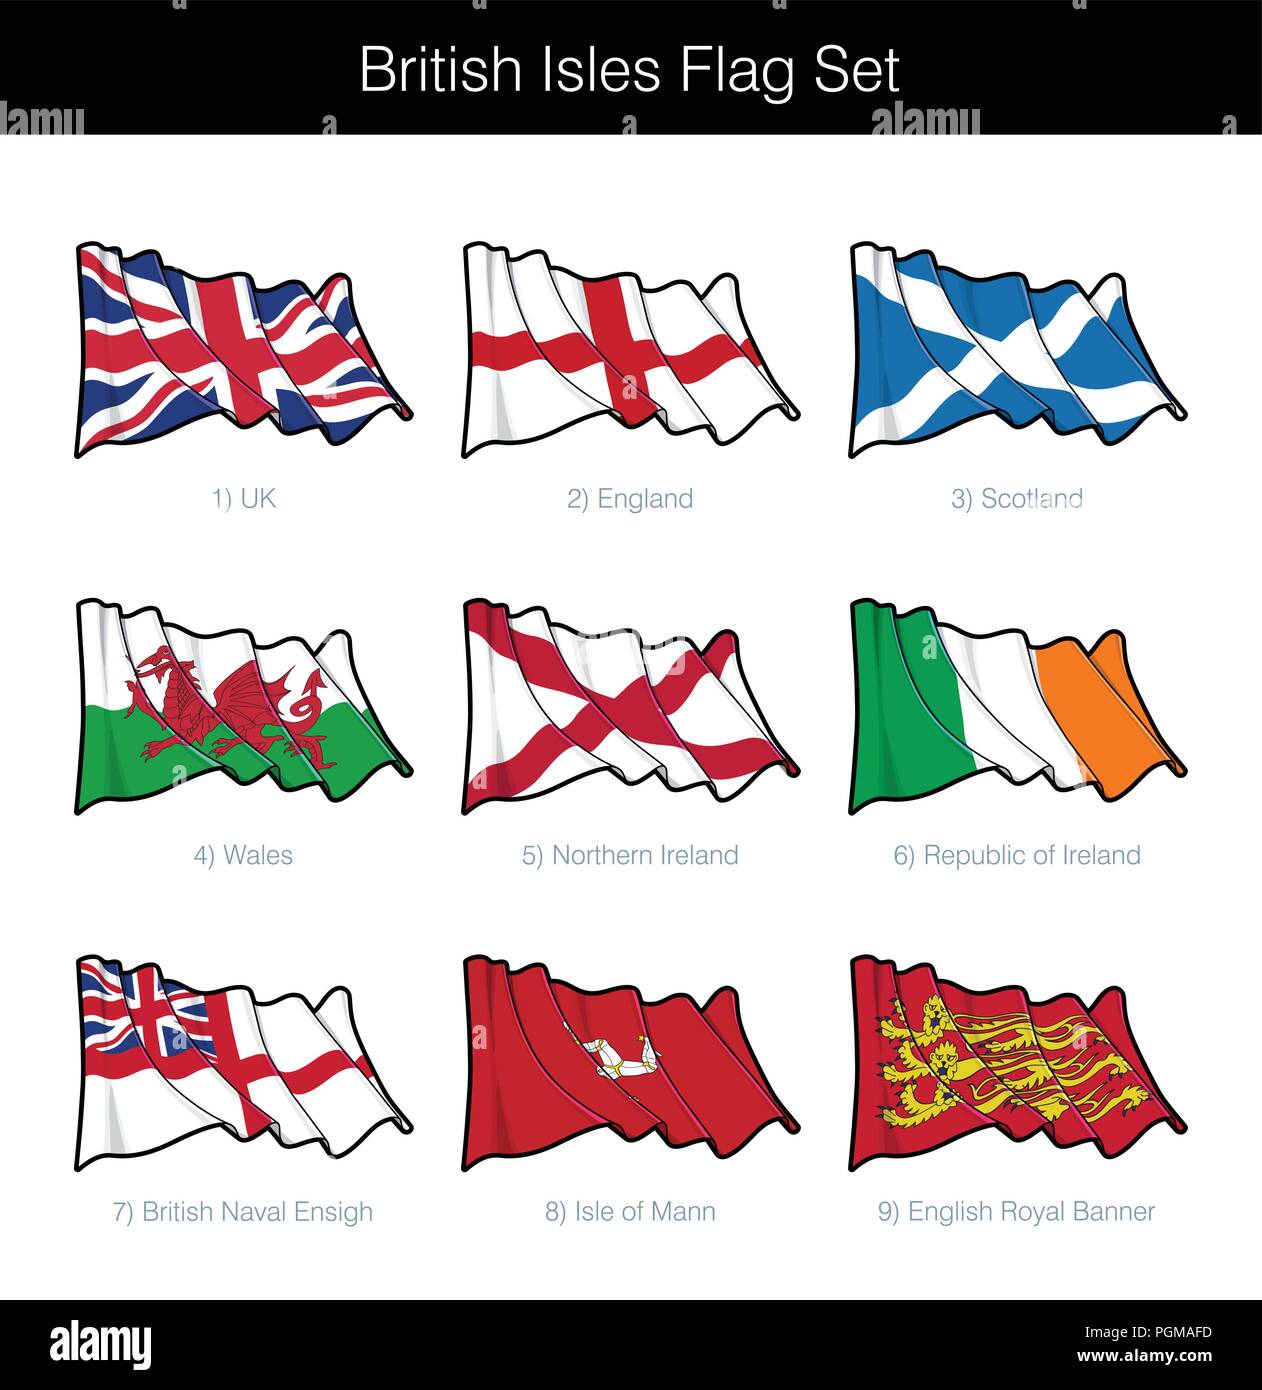 Britische Inseln wehende Flagge gesetzt. Das Set beinhaltet die Flaggen von Großbritannien, England, Schottland, Wales, Nordirland, der Republik Irland, die Britische Marine, ist Stock Vektor